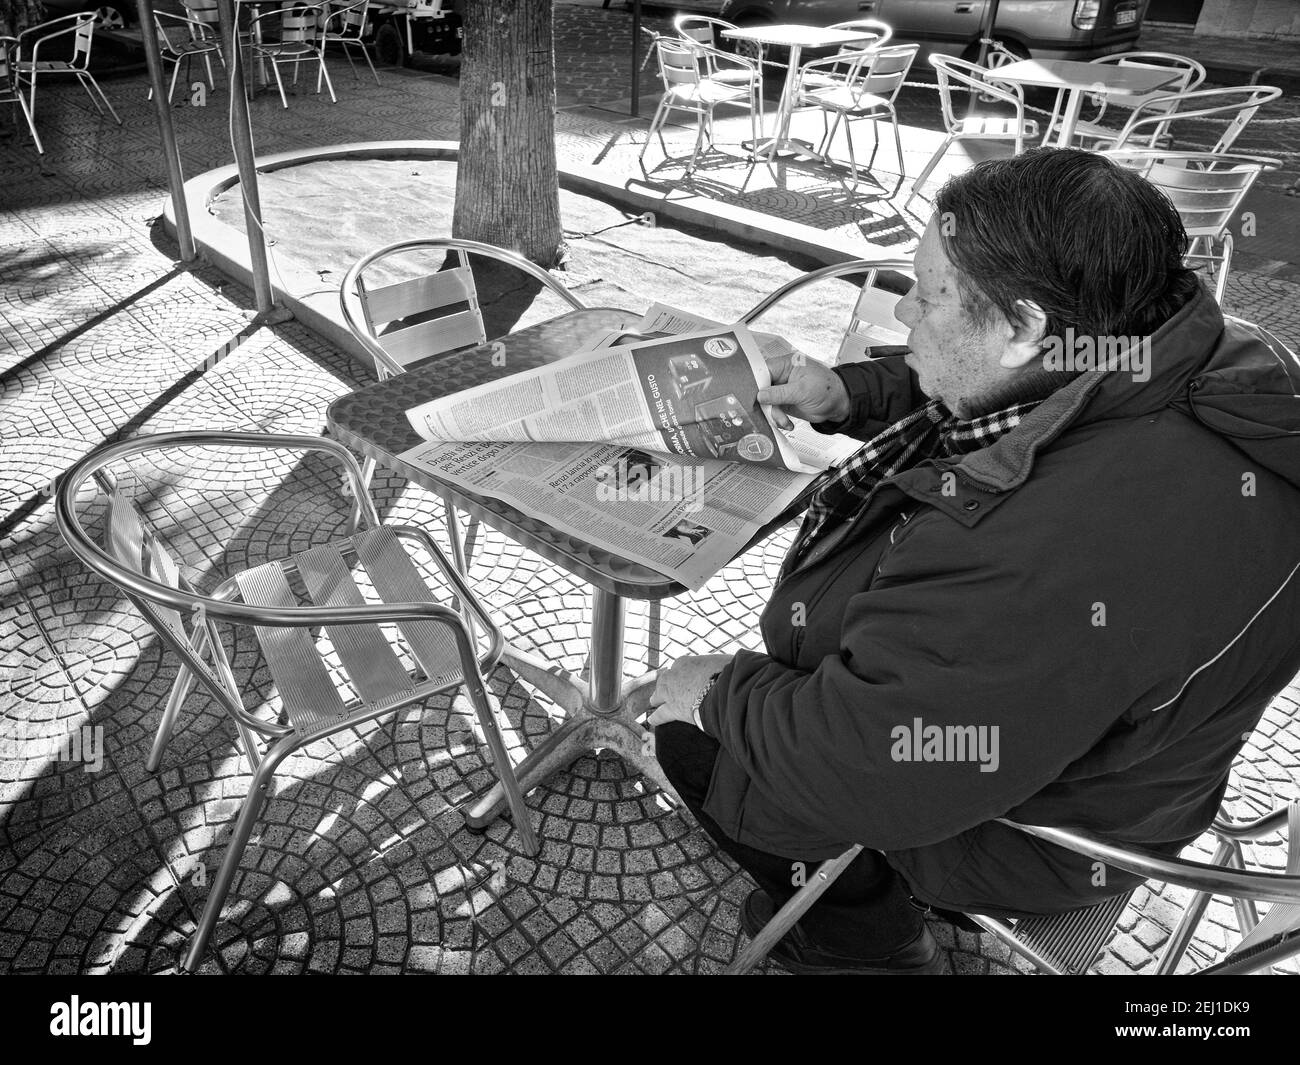 SIRACUSA, ITALIA - JENARY 03: Un uomo con un sigaro è seduto in un caffè all'aperto e sta leggendo un giornale. Girato nel 2015 Foto Stock